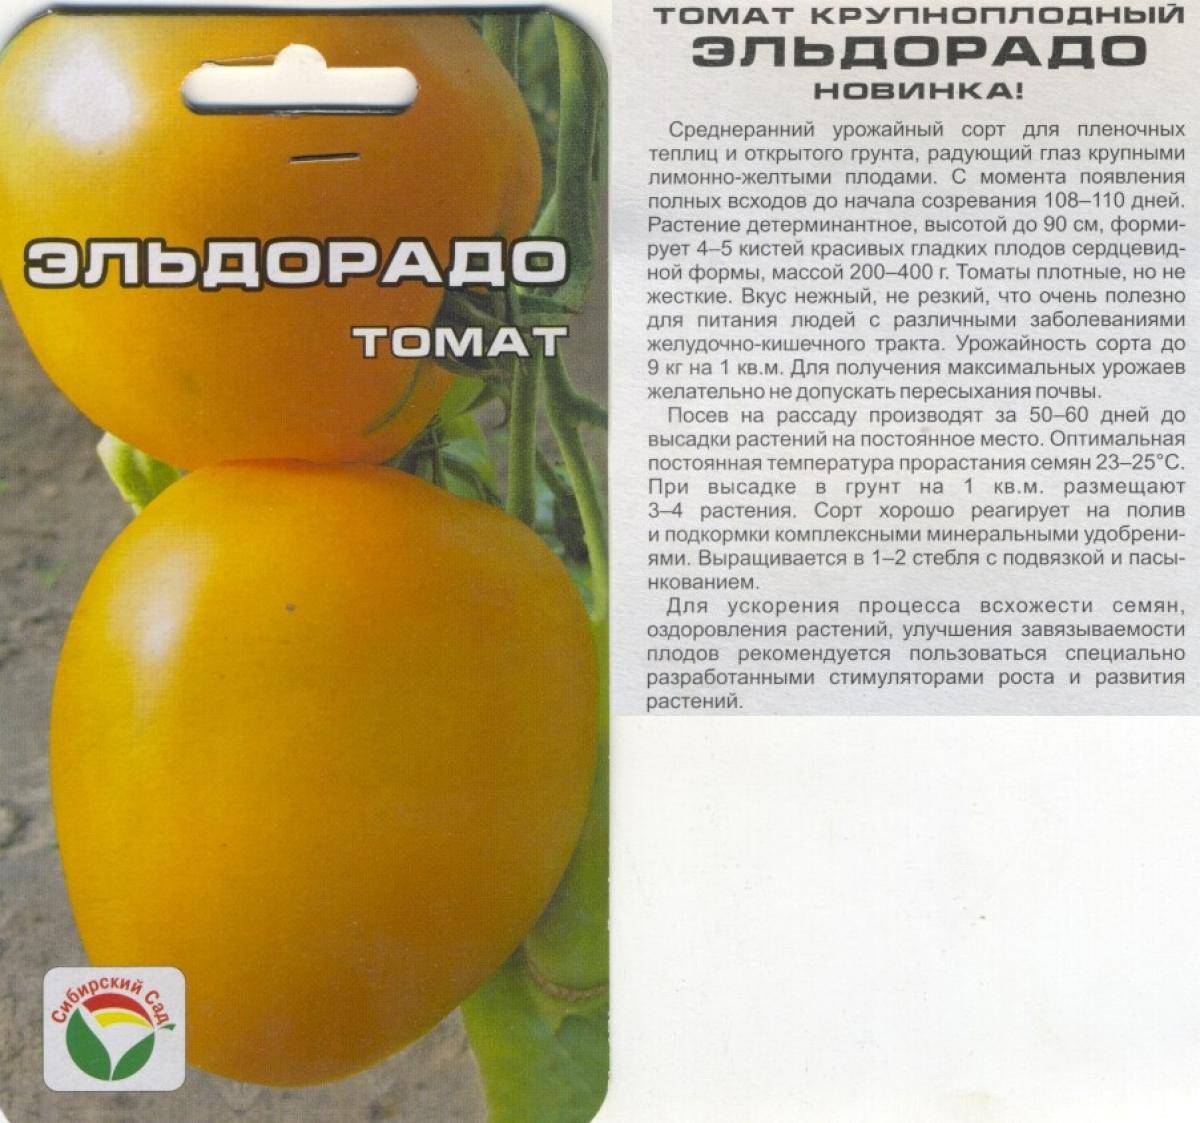 Описание томата Желтый шар, выращивание рассады и уход за кустами